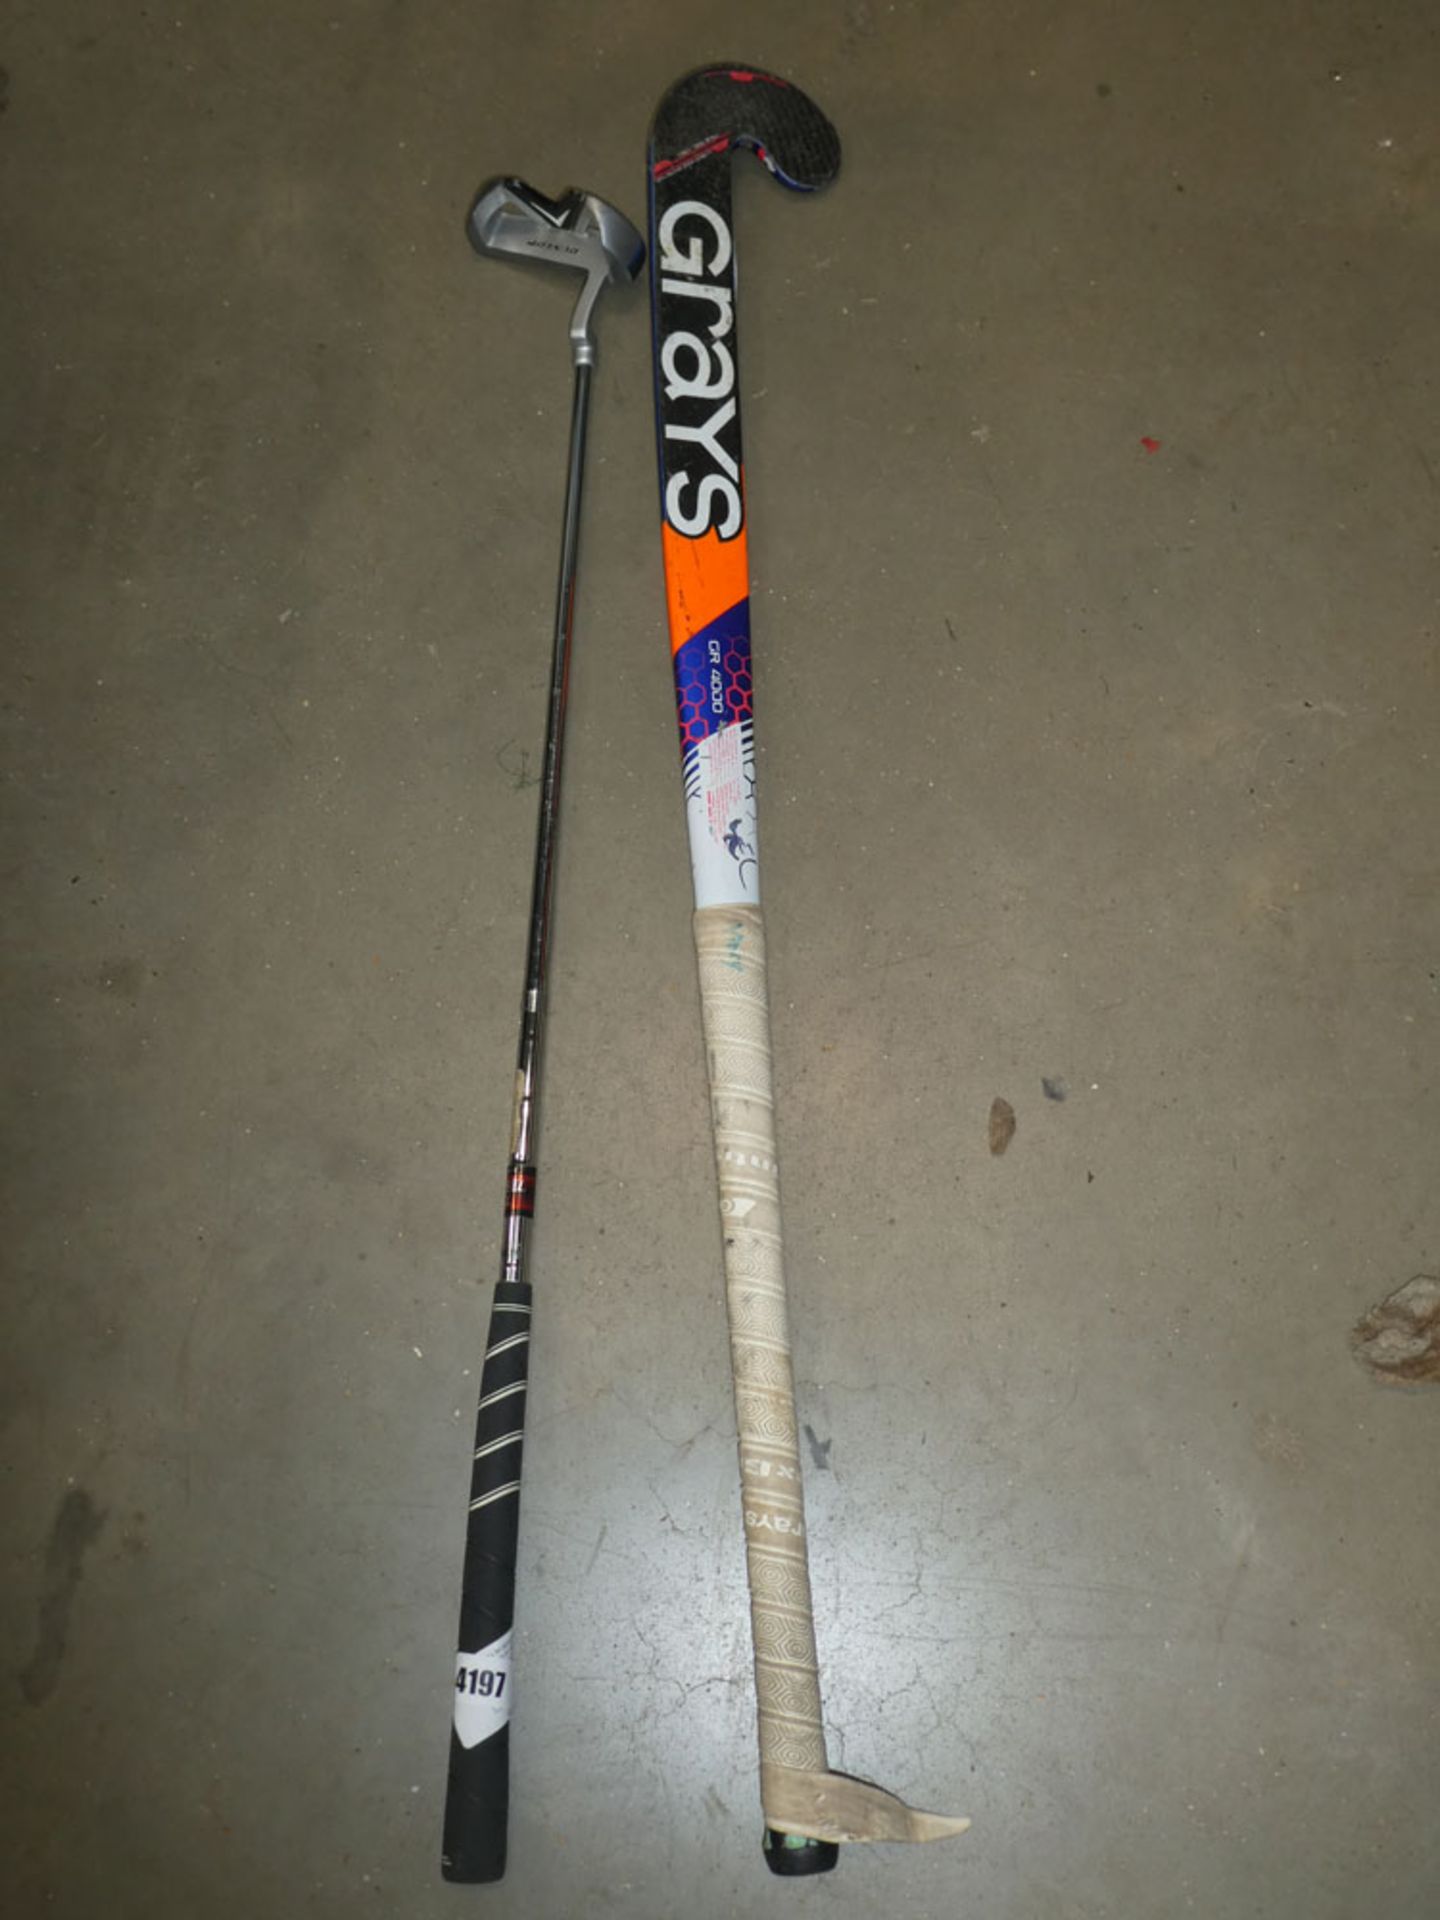 Hockey stick and Dunlop putter